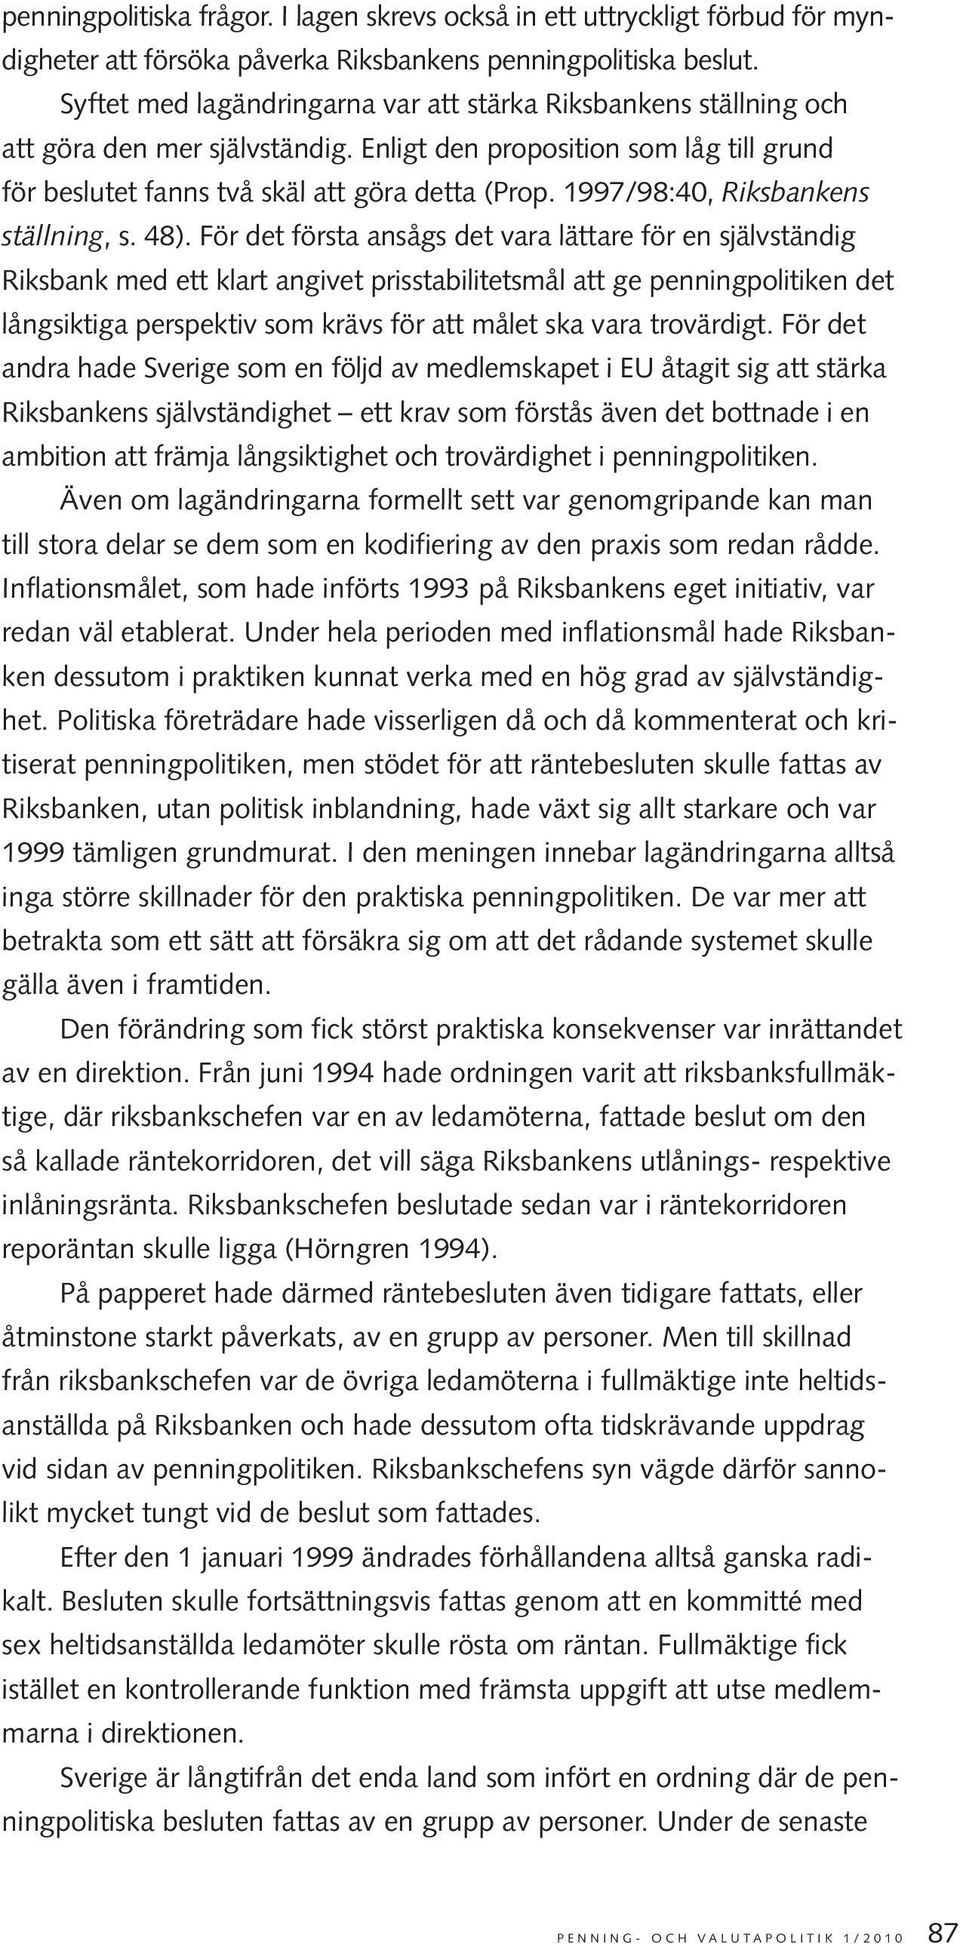 1997/98:40, Riksbankens ställning, s. 48).